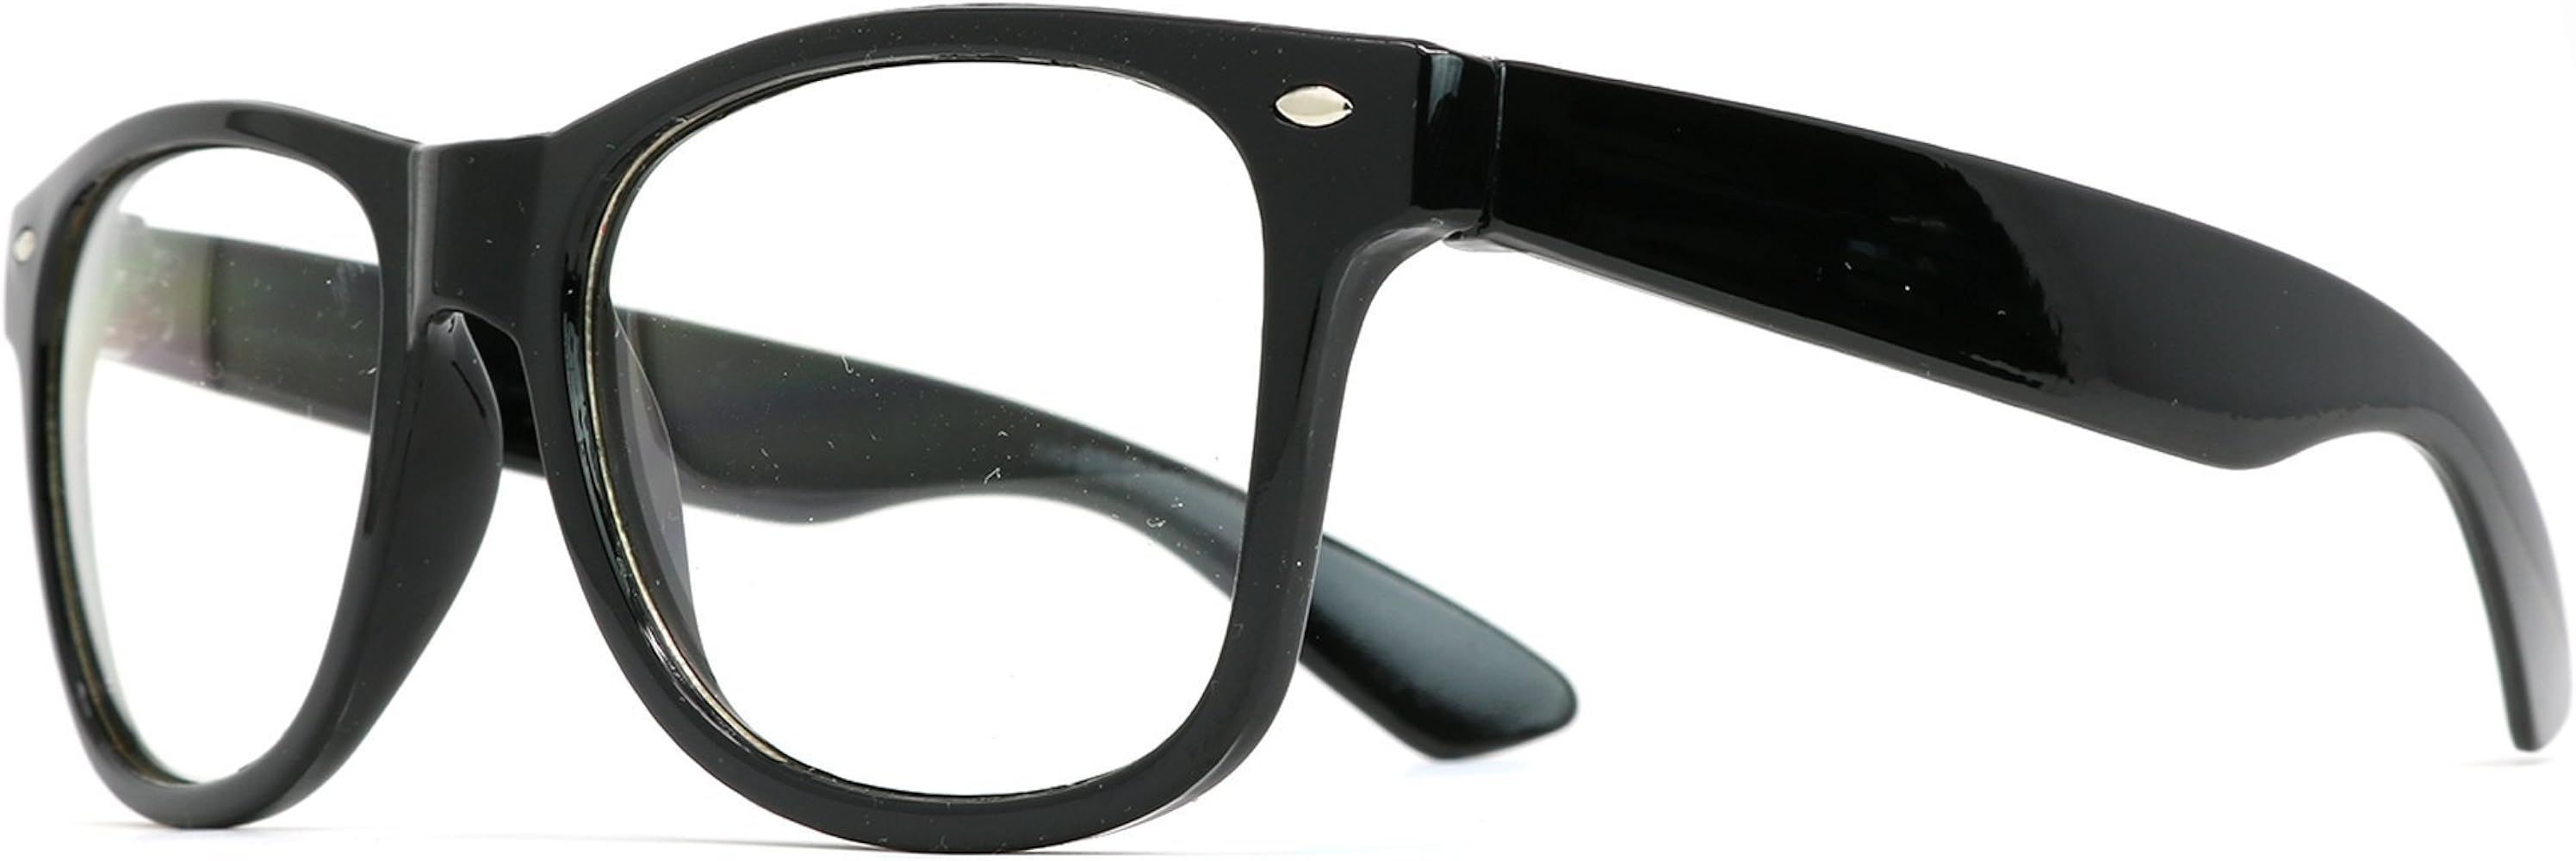 Skeleteen Retro Nerd Costume Glasses - Oversized Black Hipster Eyeglasses with Clear Lenses - 1 P... | Amazon (US)